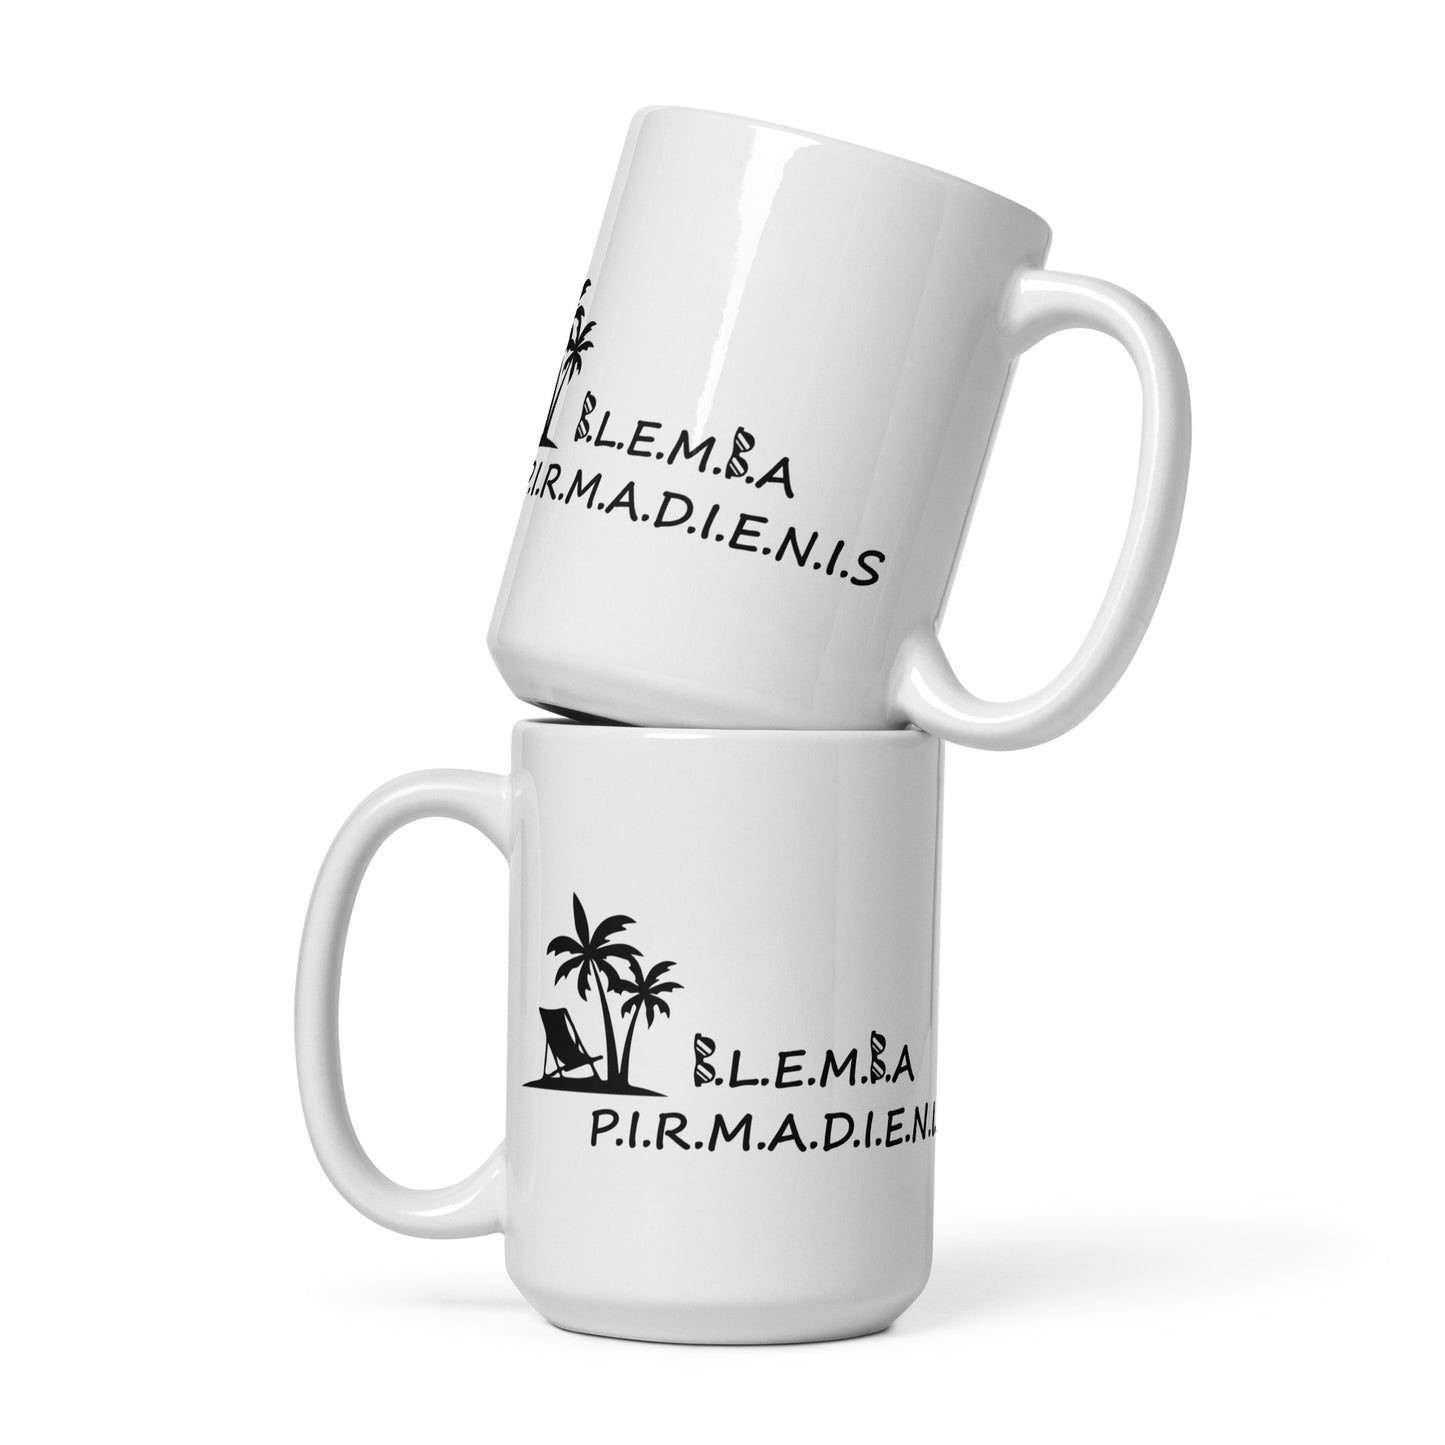 White glossy mug: Blemba Monday